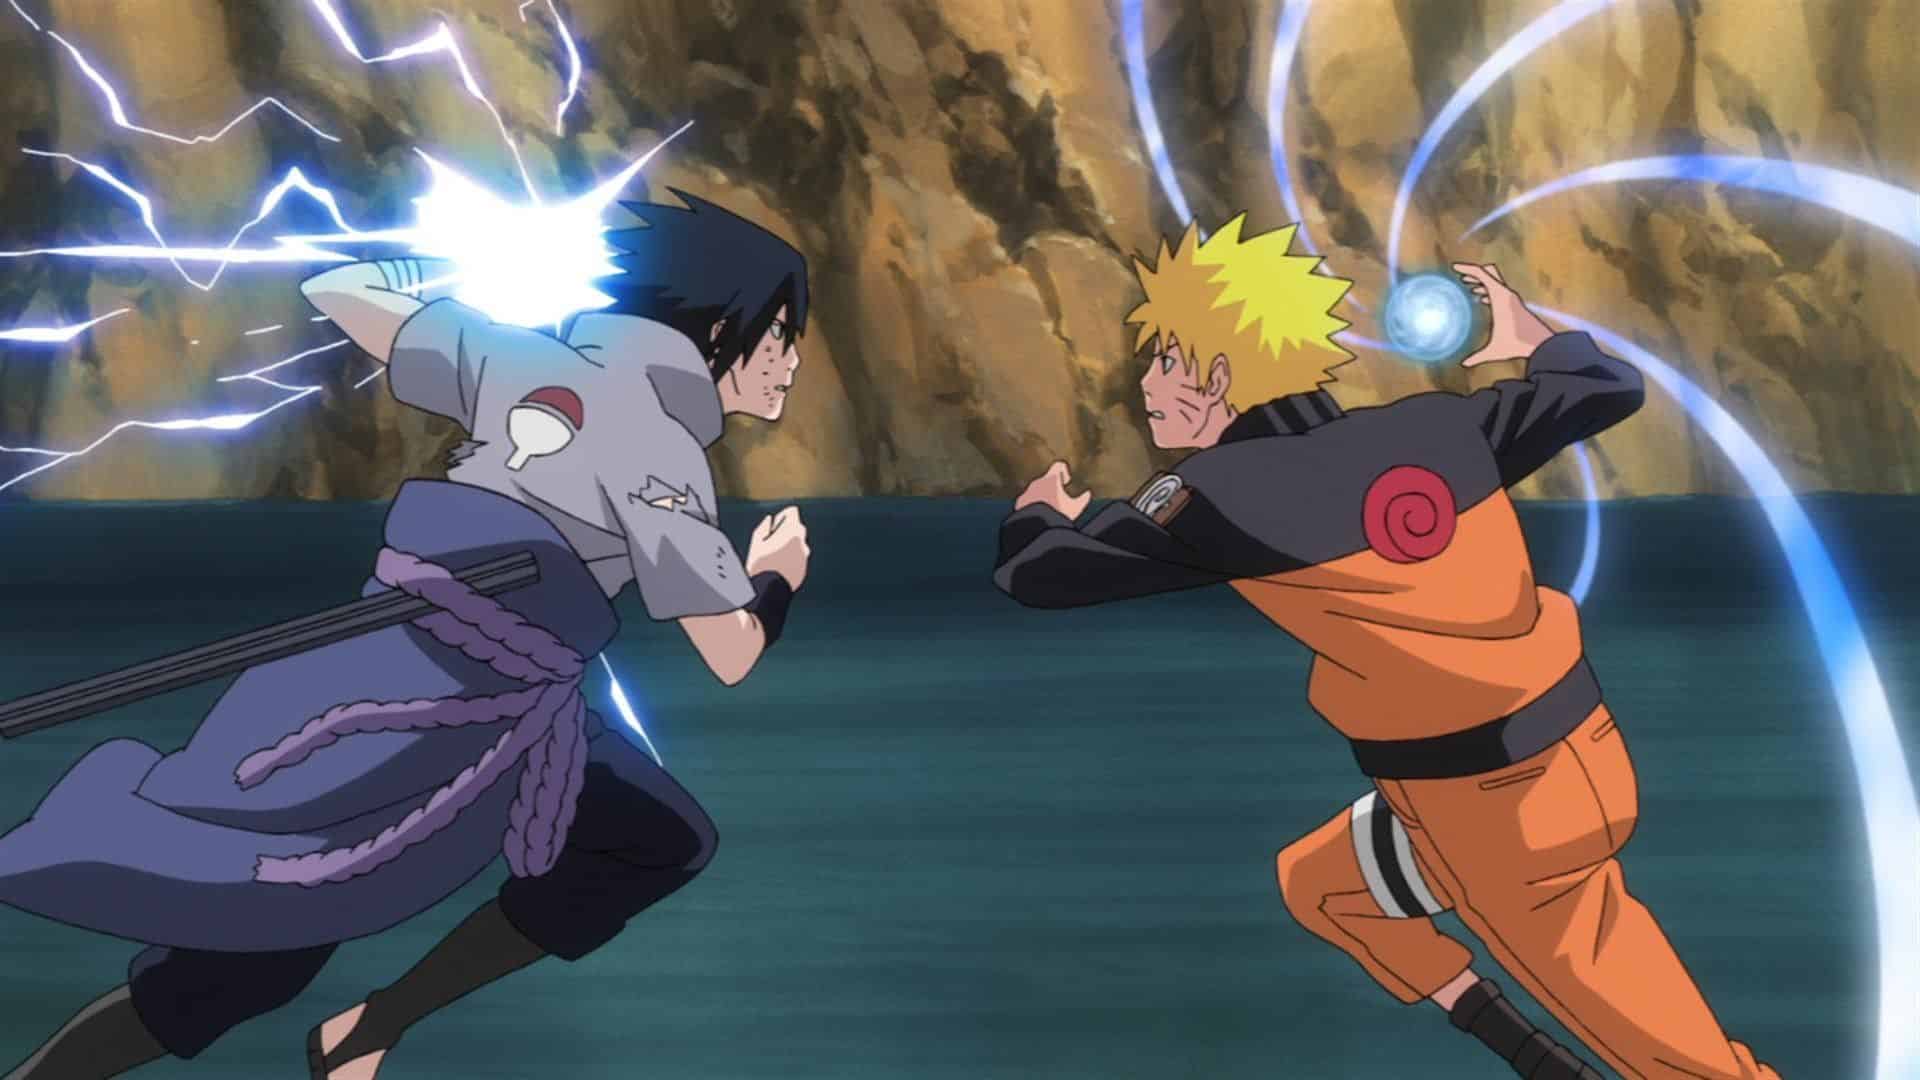 Bạn đã sẵn sàng để chiêm ngưỡng một khoảnh khắc đặc biệt với đôi bạn Naruto và Sasuke? Ảnh mới nhất này sẽ cho bạn cái nhìn tuyệt vời về những tình bạn đong đầy nhiệt huyết.